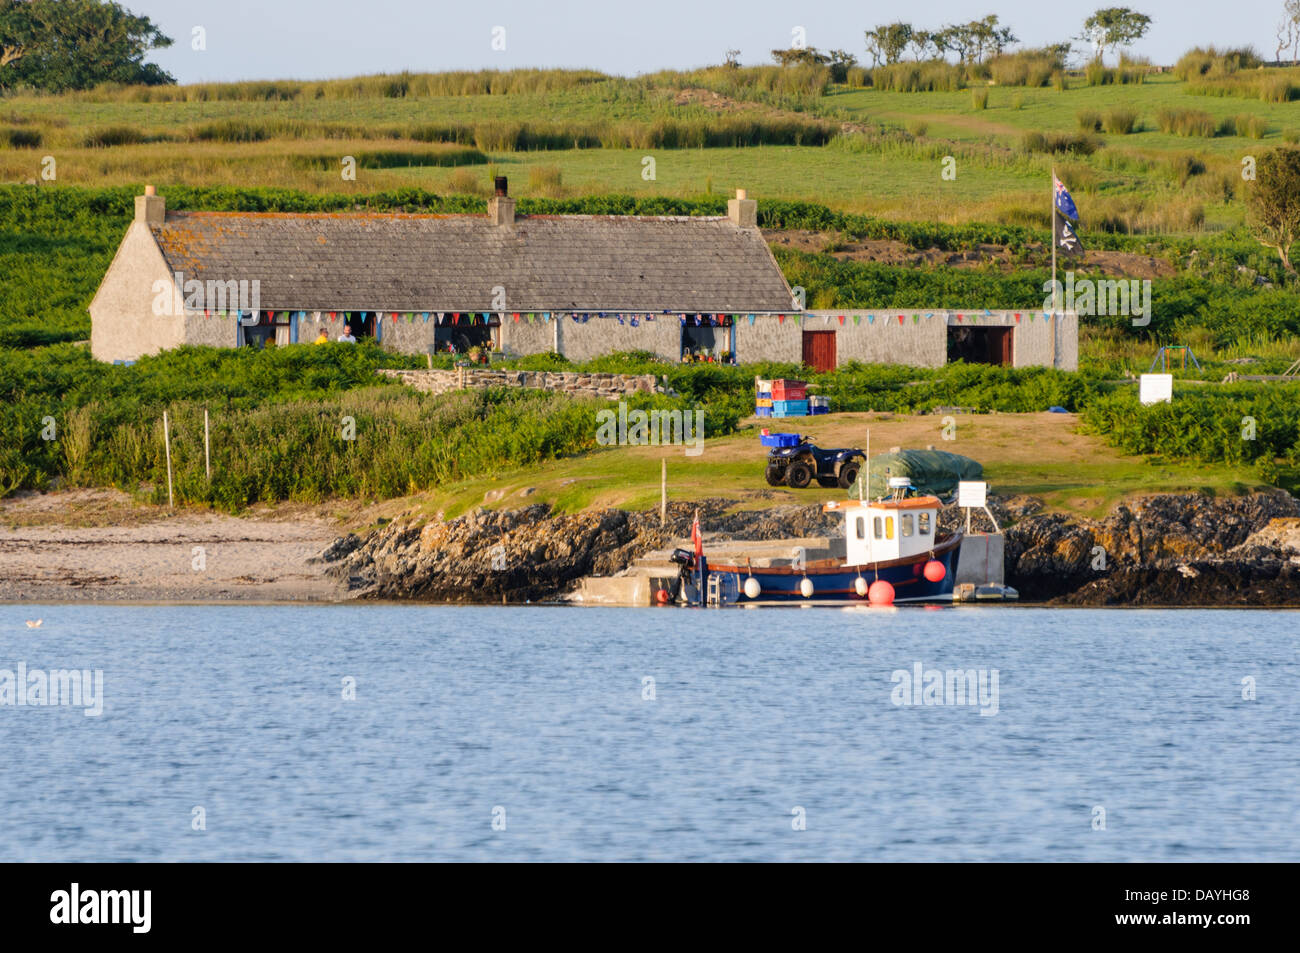 Casa en la isla Copeland, Irlanda del Norte, con una bandera para indicar que está ocupada. Foto de stock